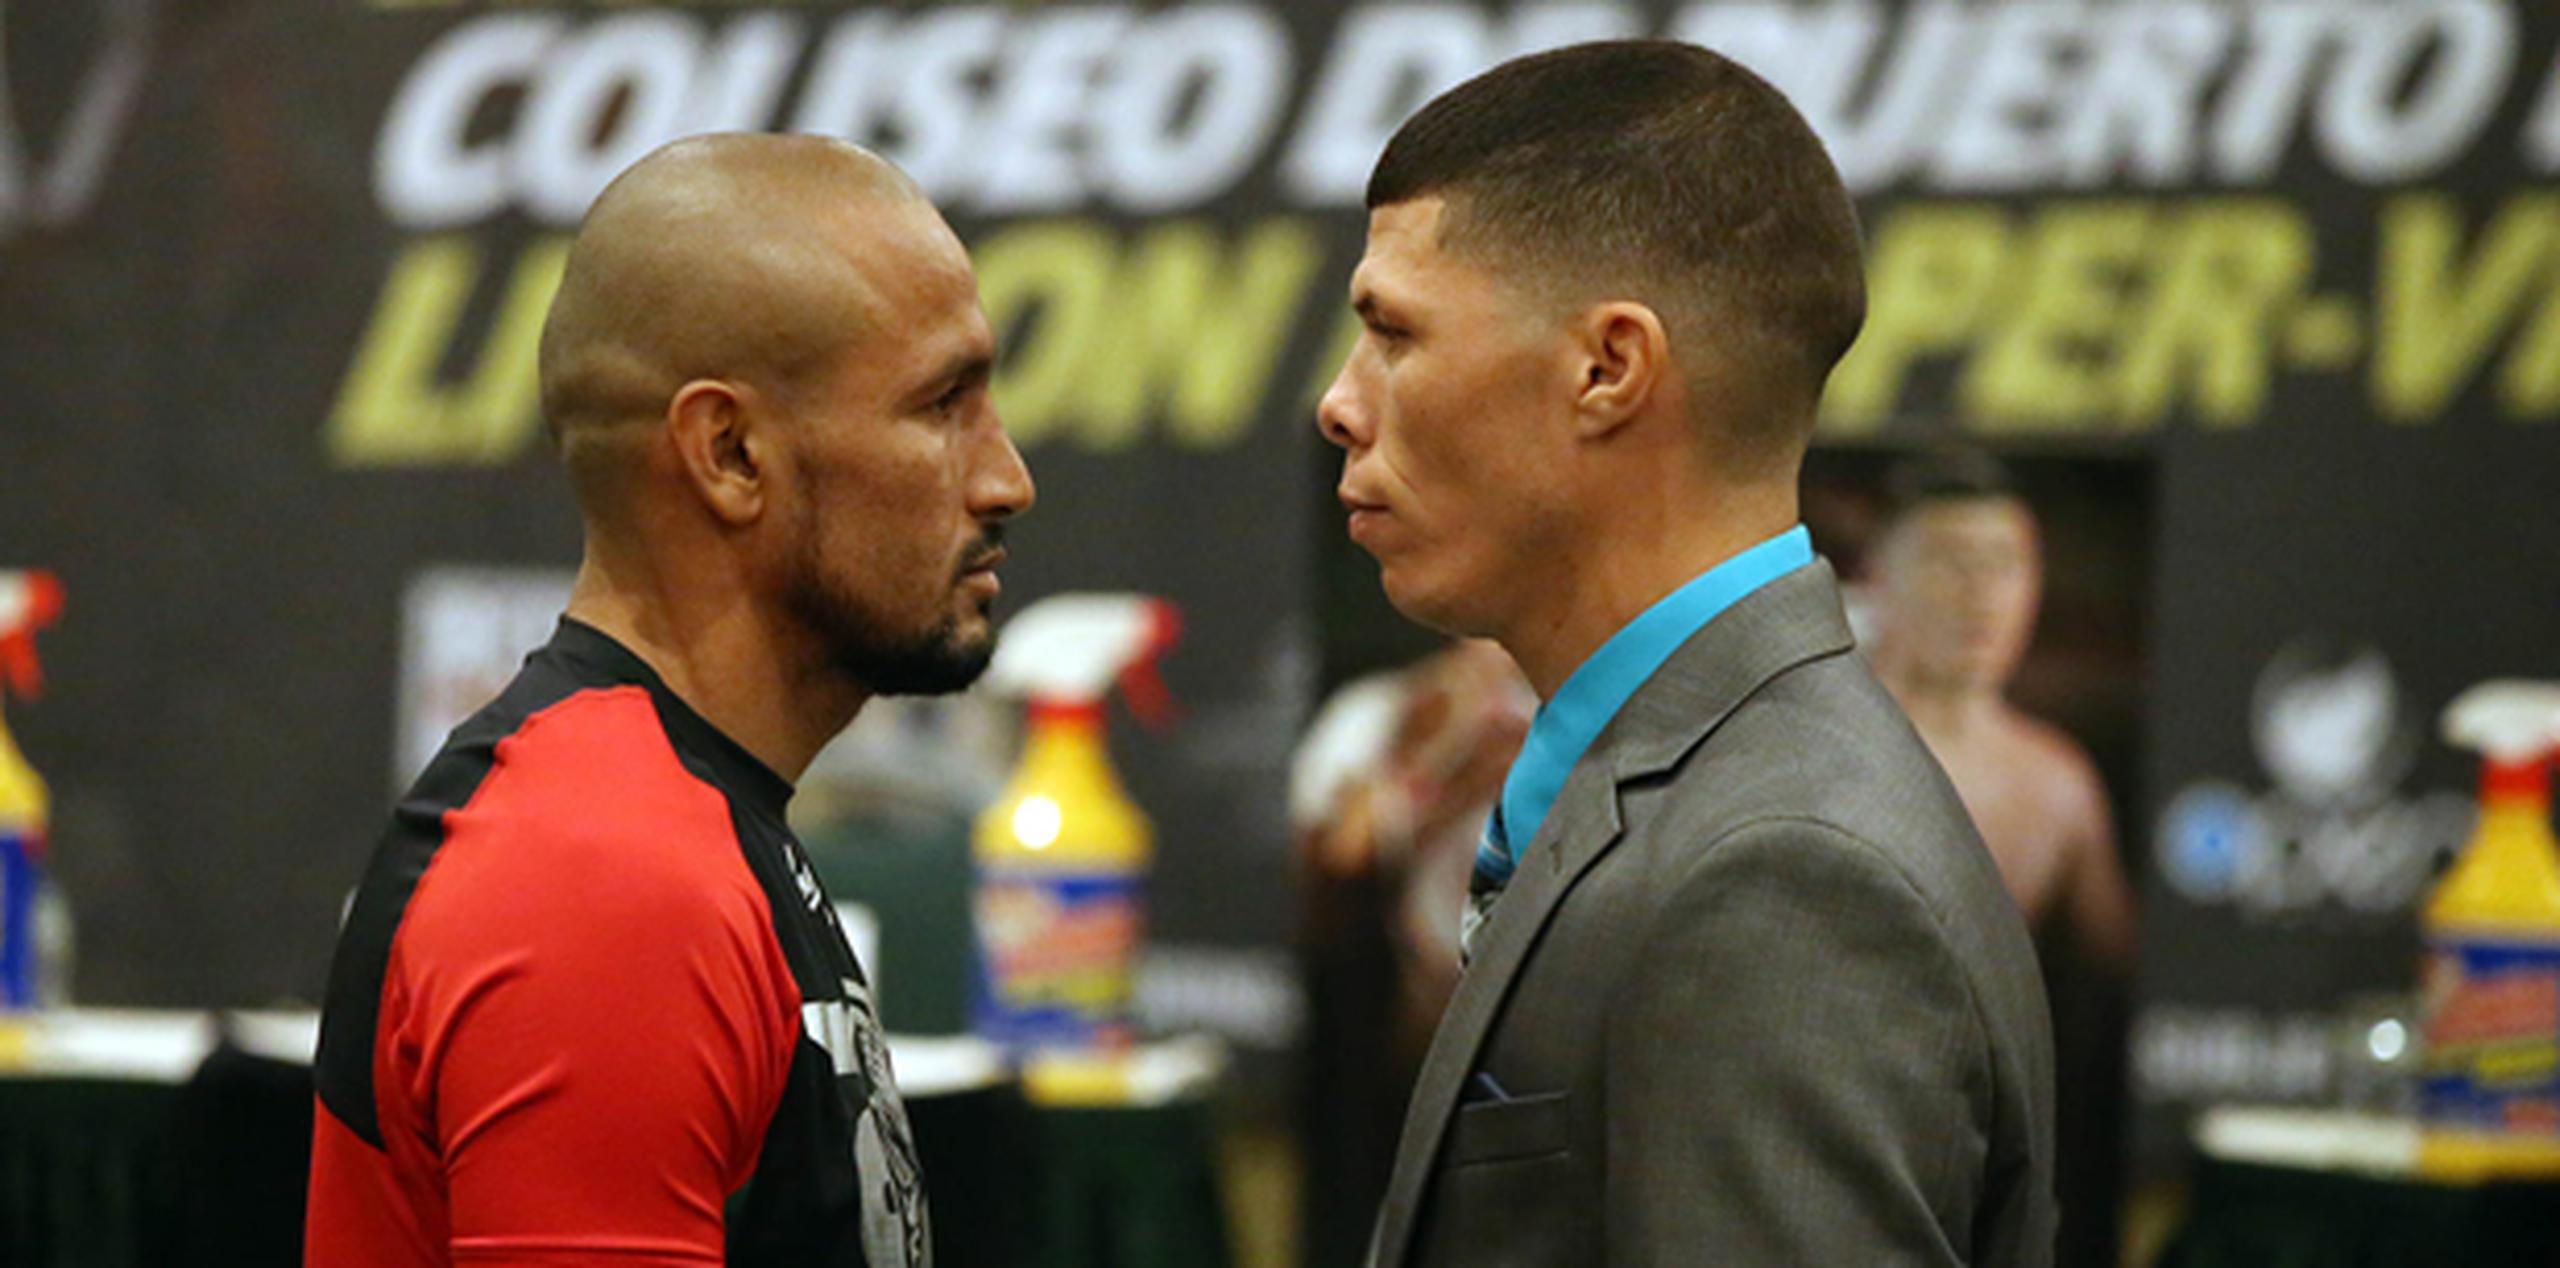 El combate entre Román “Rocky” Martínez y Orlando Salido será el próximo sábado. (david.villafane@gfrmedia.com)